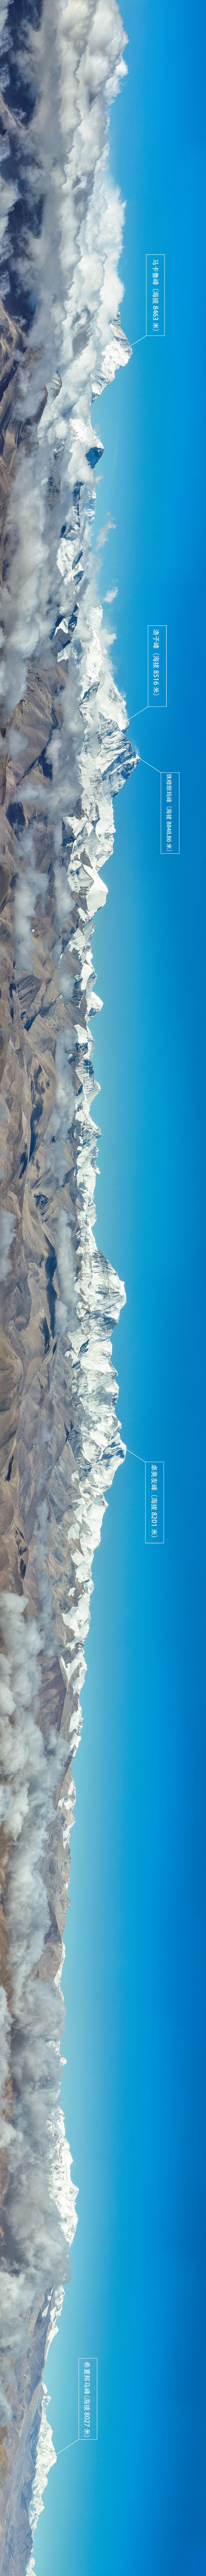 天空之眼瞰珠峰：在海拔8000米高空远眺珠峰，是什么样的体验？